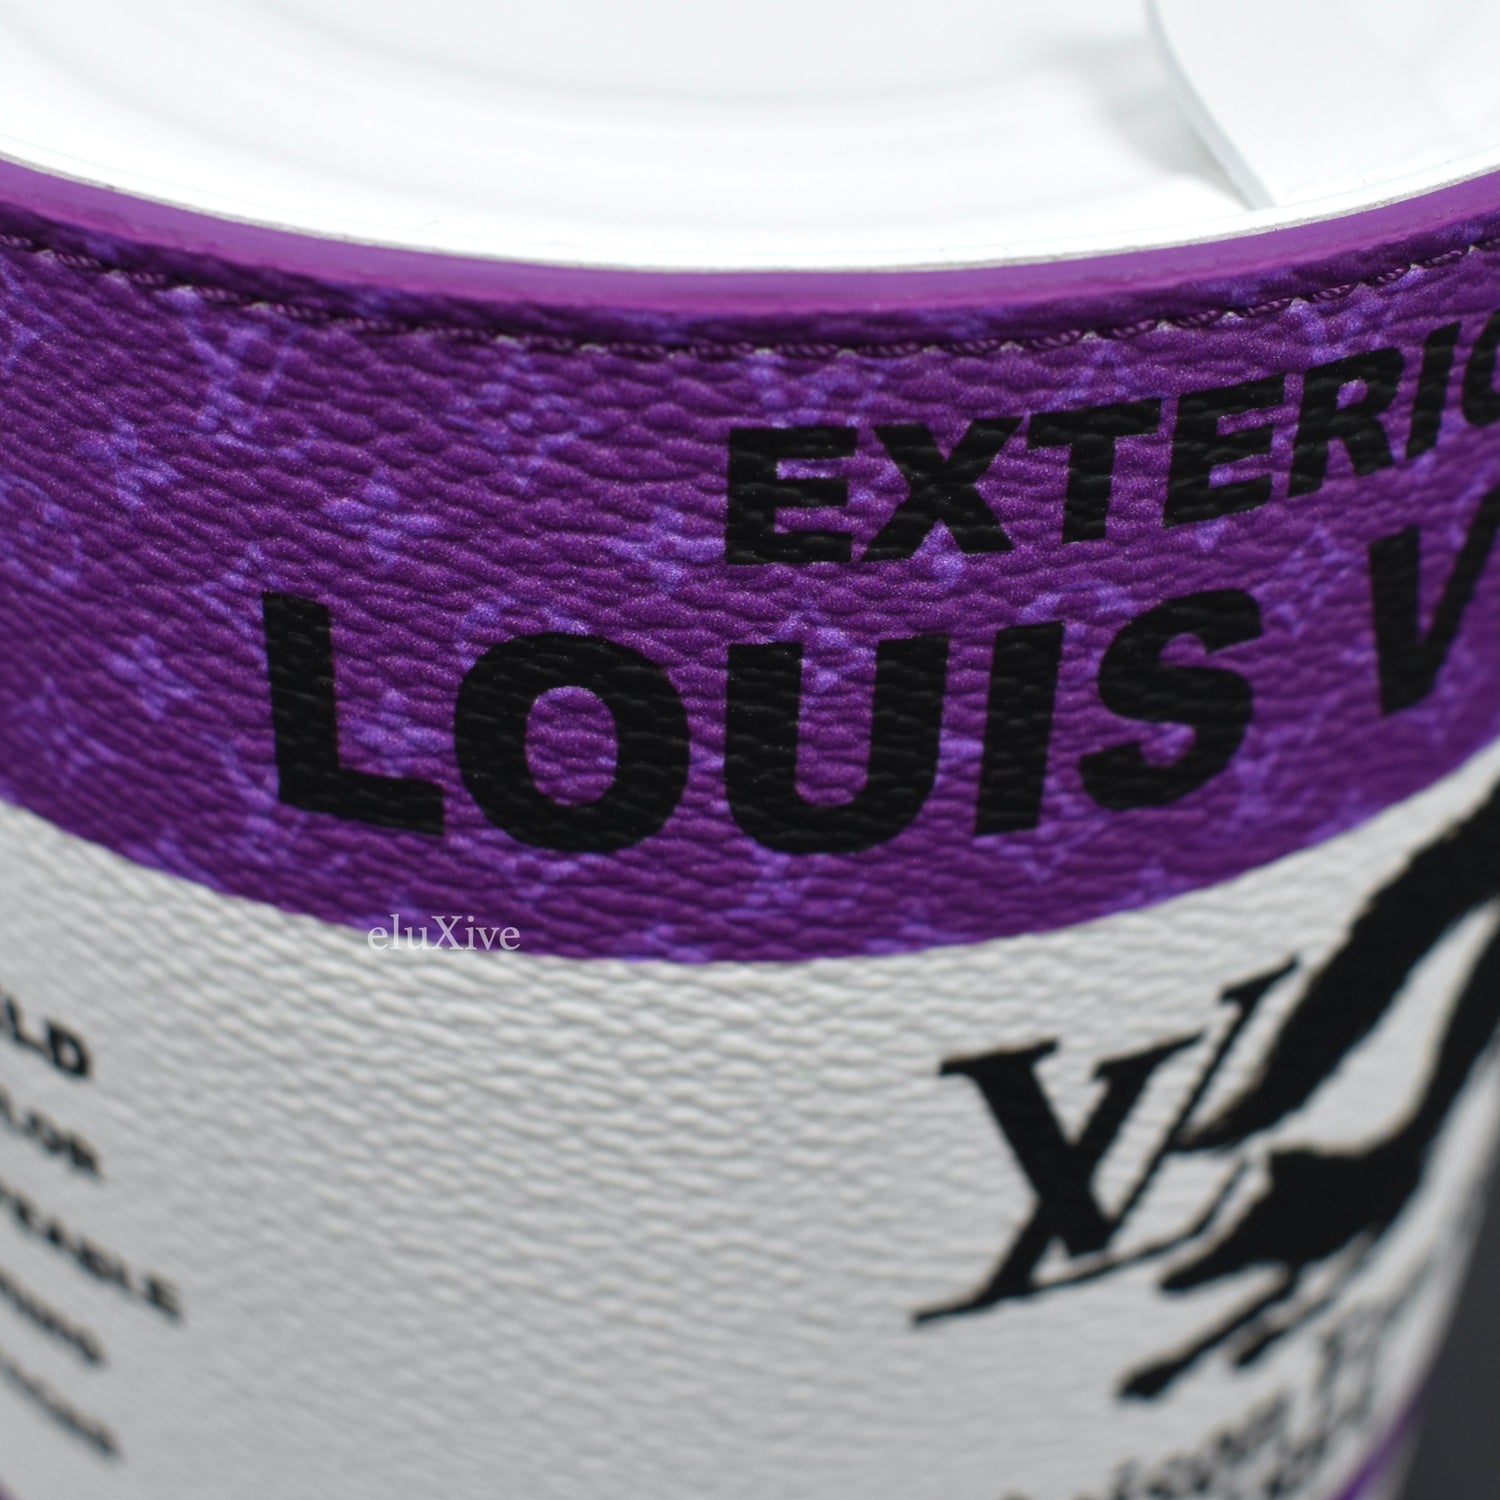 Louis Vuitton M81591 LV Paint Can, Purple, One Size